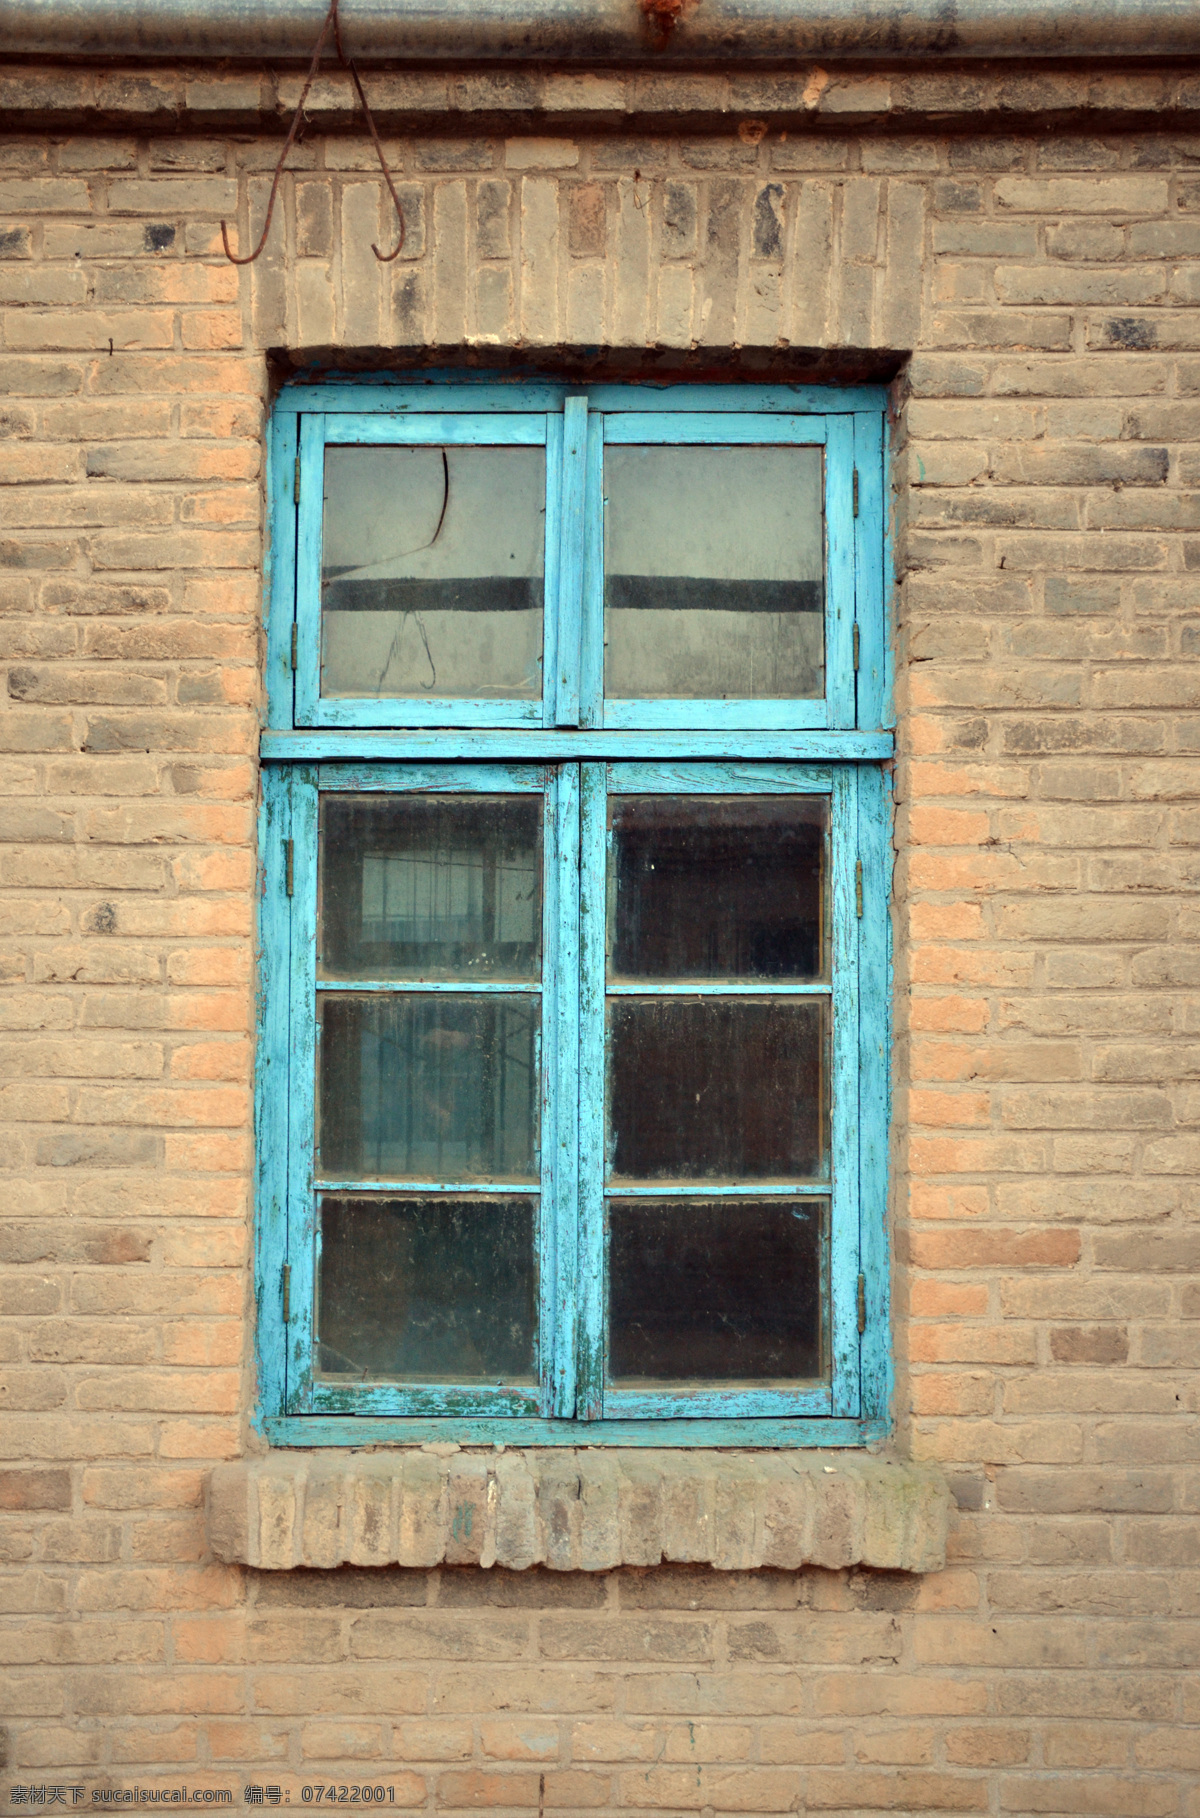 老窗户 70年代窗户 窗户贴图 木窗户 旧窗户贴图 生活百科 生活素材